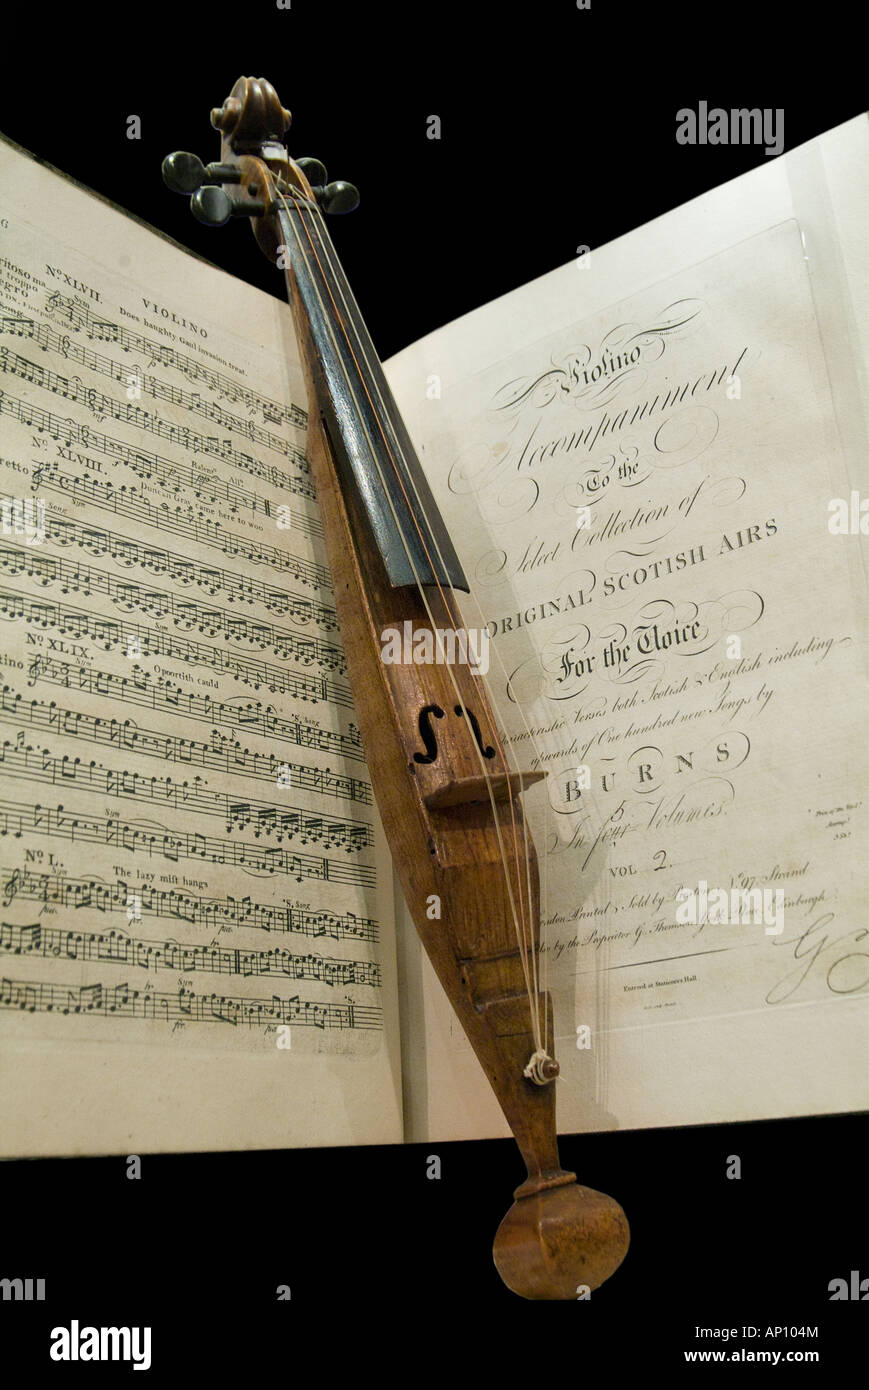 frühe Zeichenfolge Geige antike Musikinstrument 4 vier Noten Musiknotation verbrennt Holz Ebenholz Katzendarm Scot schottischen Scotlan Stockfoto